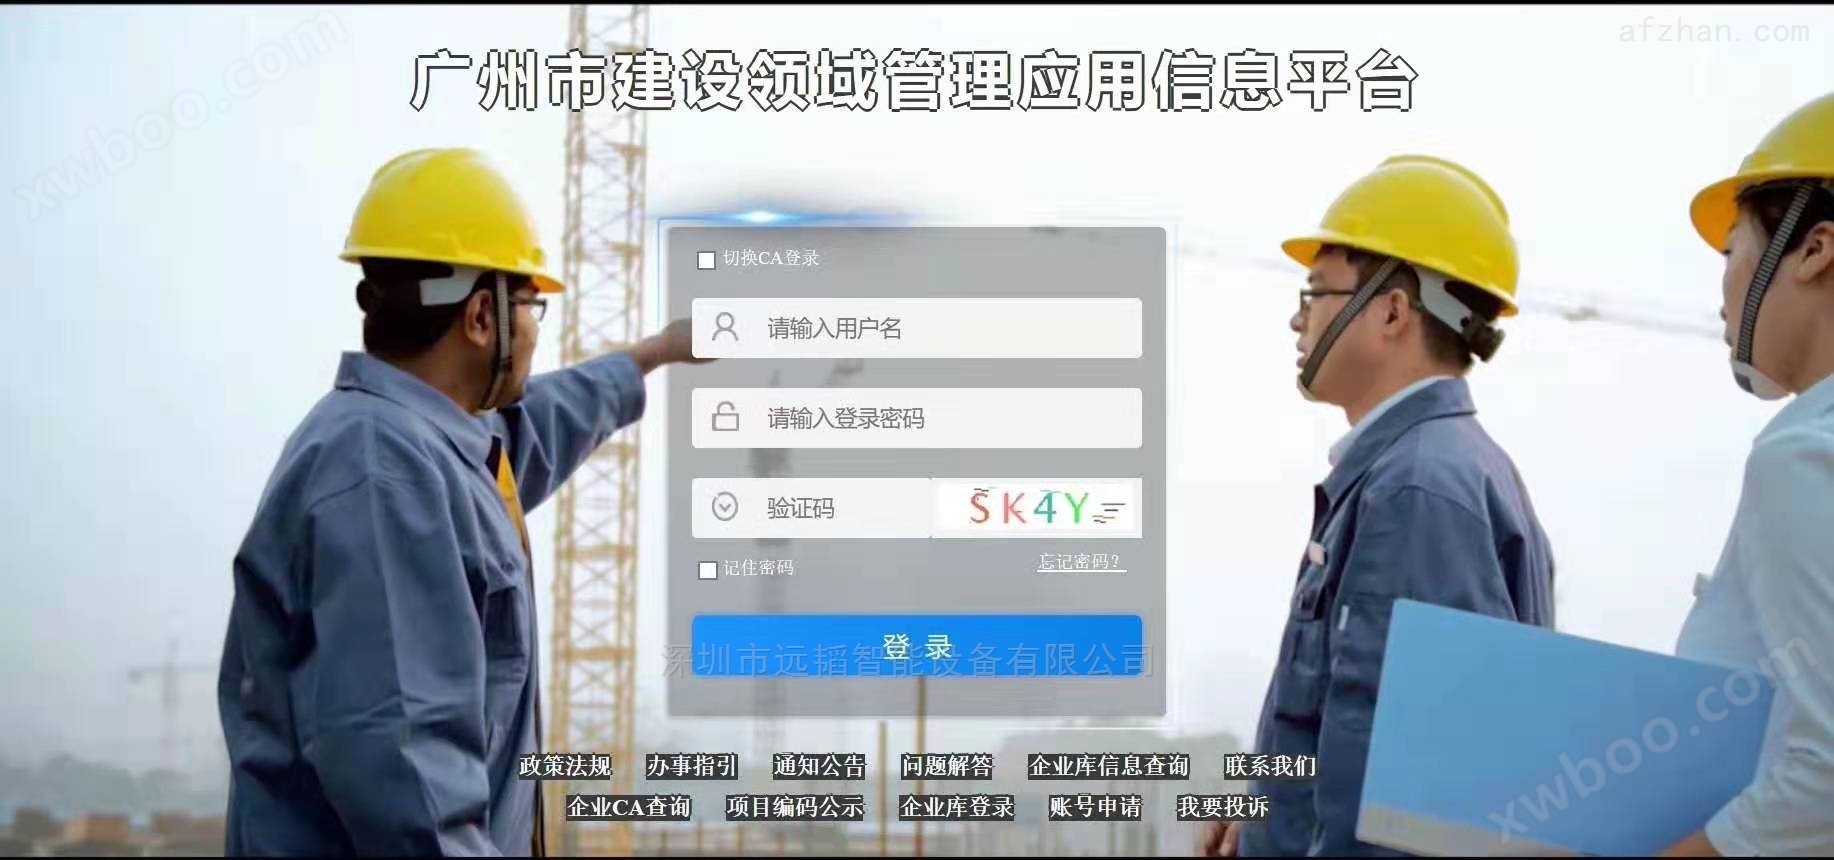 广州市建设领域管理应用信息平台实名制闸机